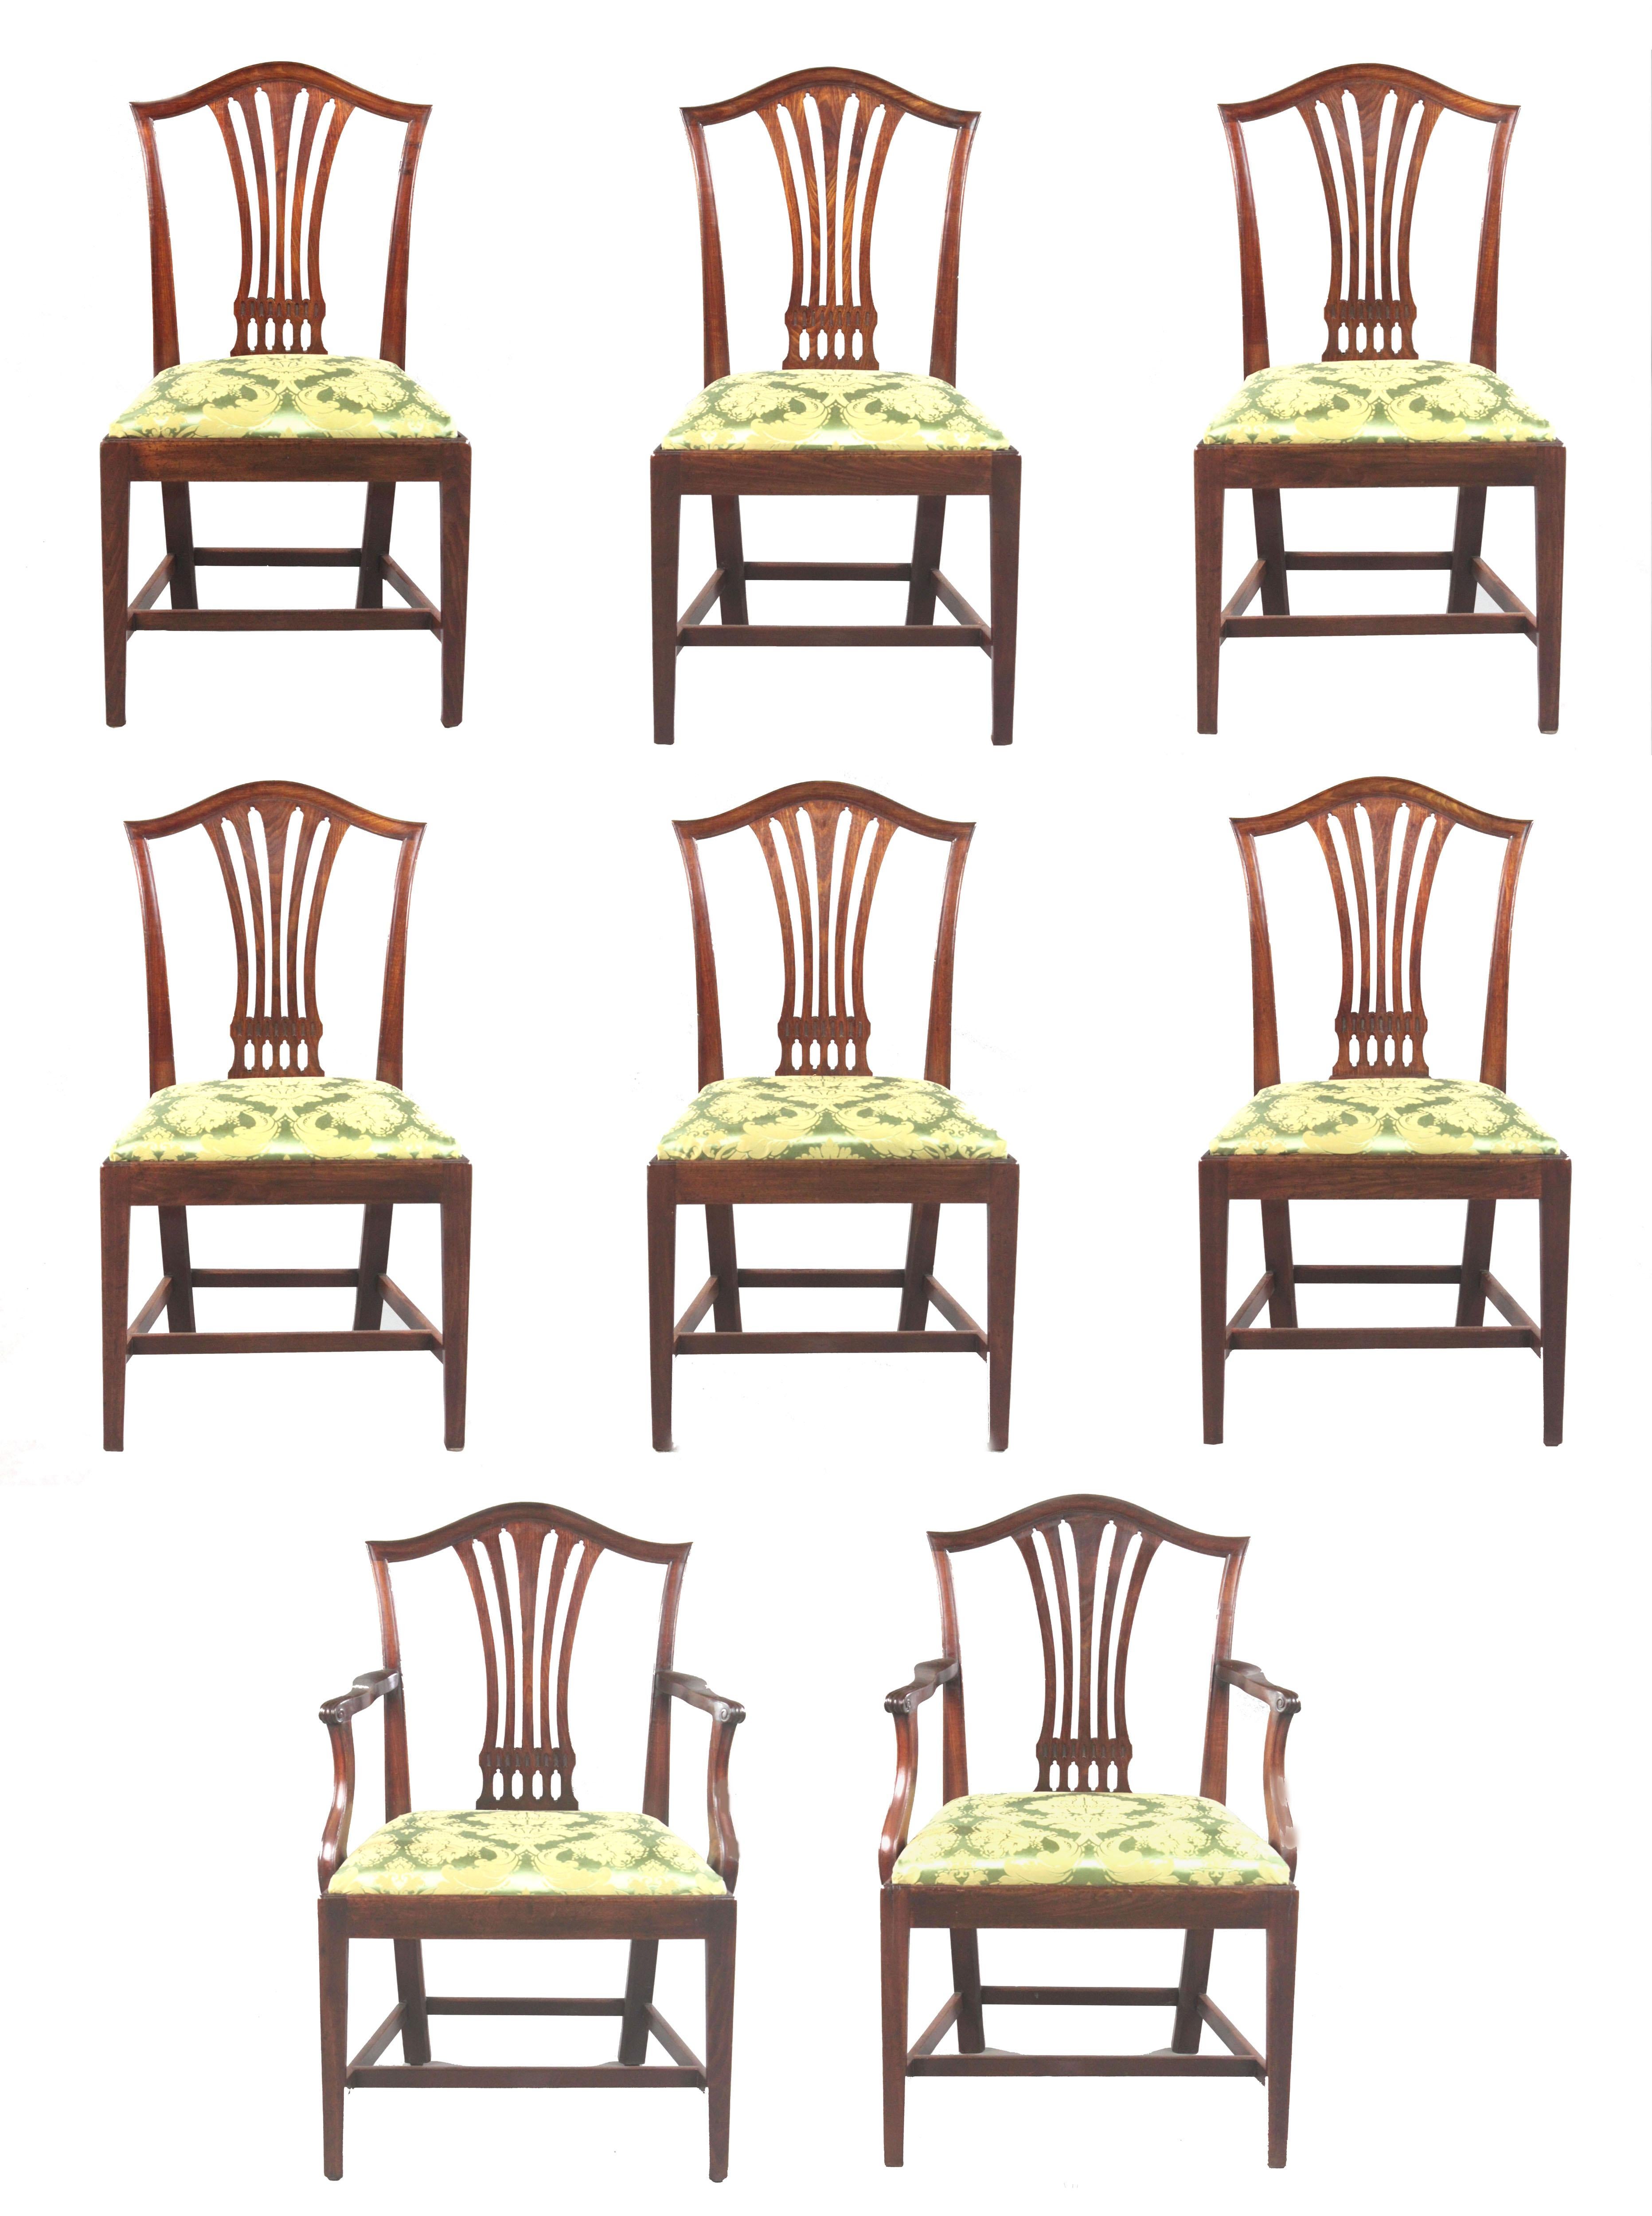 Eine Reihe von 8 George III Sheraton Periode Esszimmerstühle, zwei Schnitzer und sechs Einzelpersonen in gemasertem Mahagoni von einem guten nussbraunen Farbe und in gutem Zustand. Die Kamelrücken mit attraktiven durchbrochenen Leisten, quadratisch